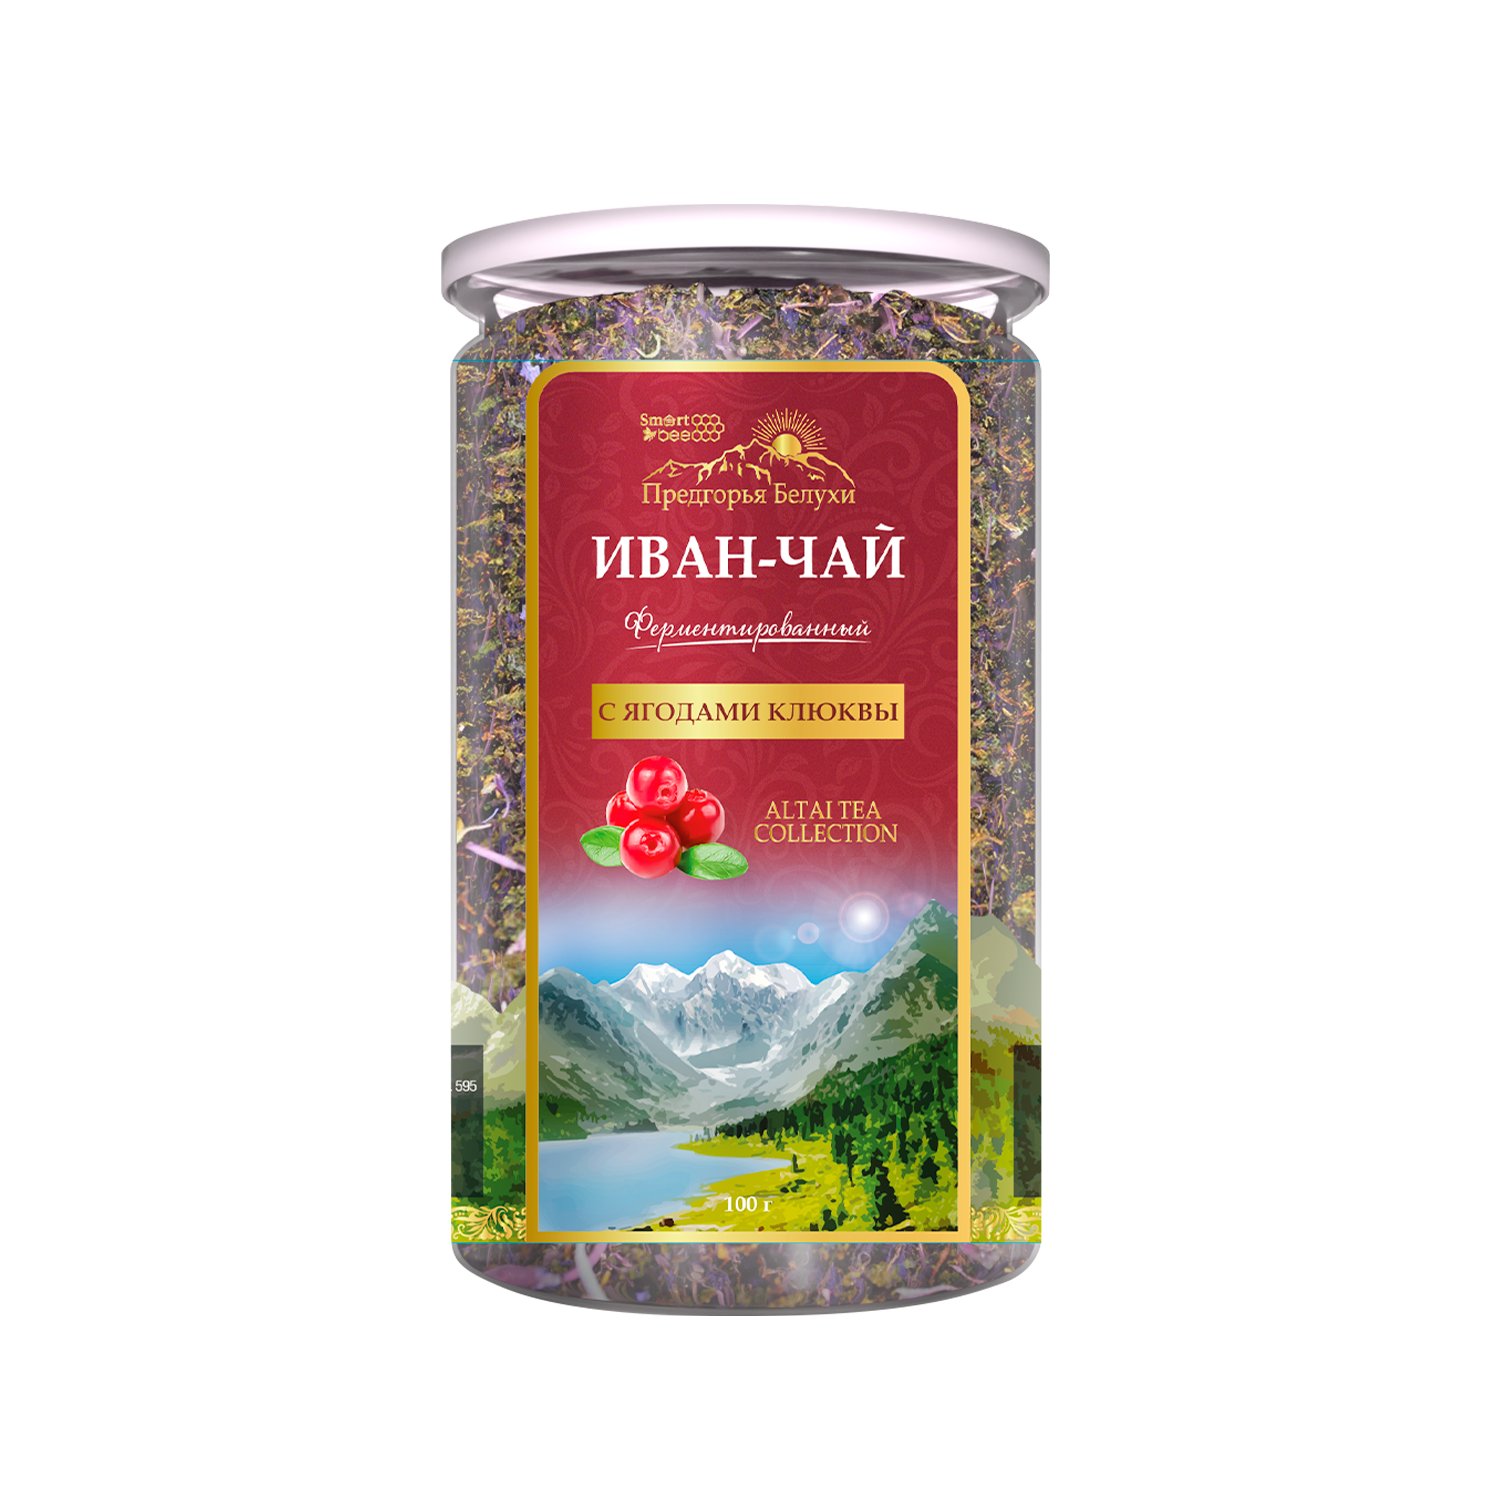 Напиток чайный Иван-чай ферментированный с ягодами клюквы